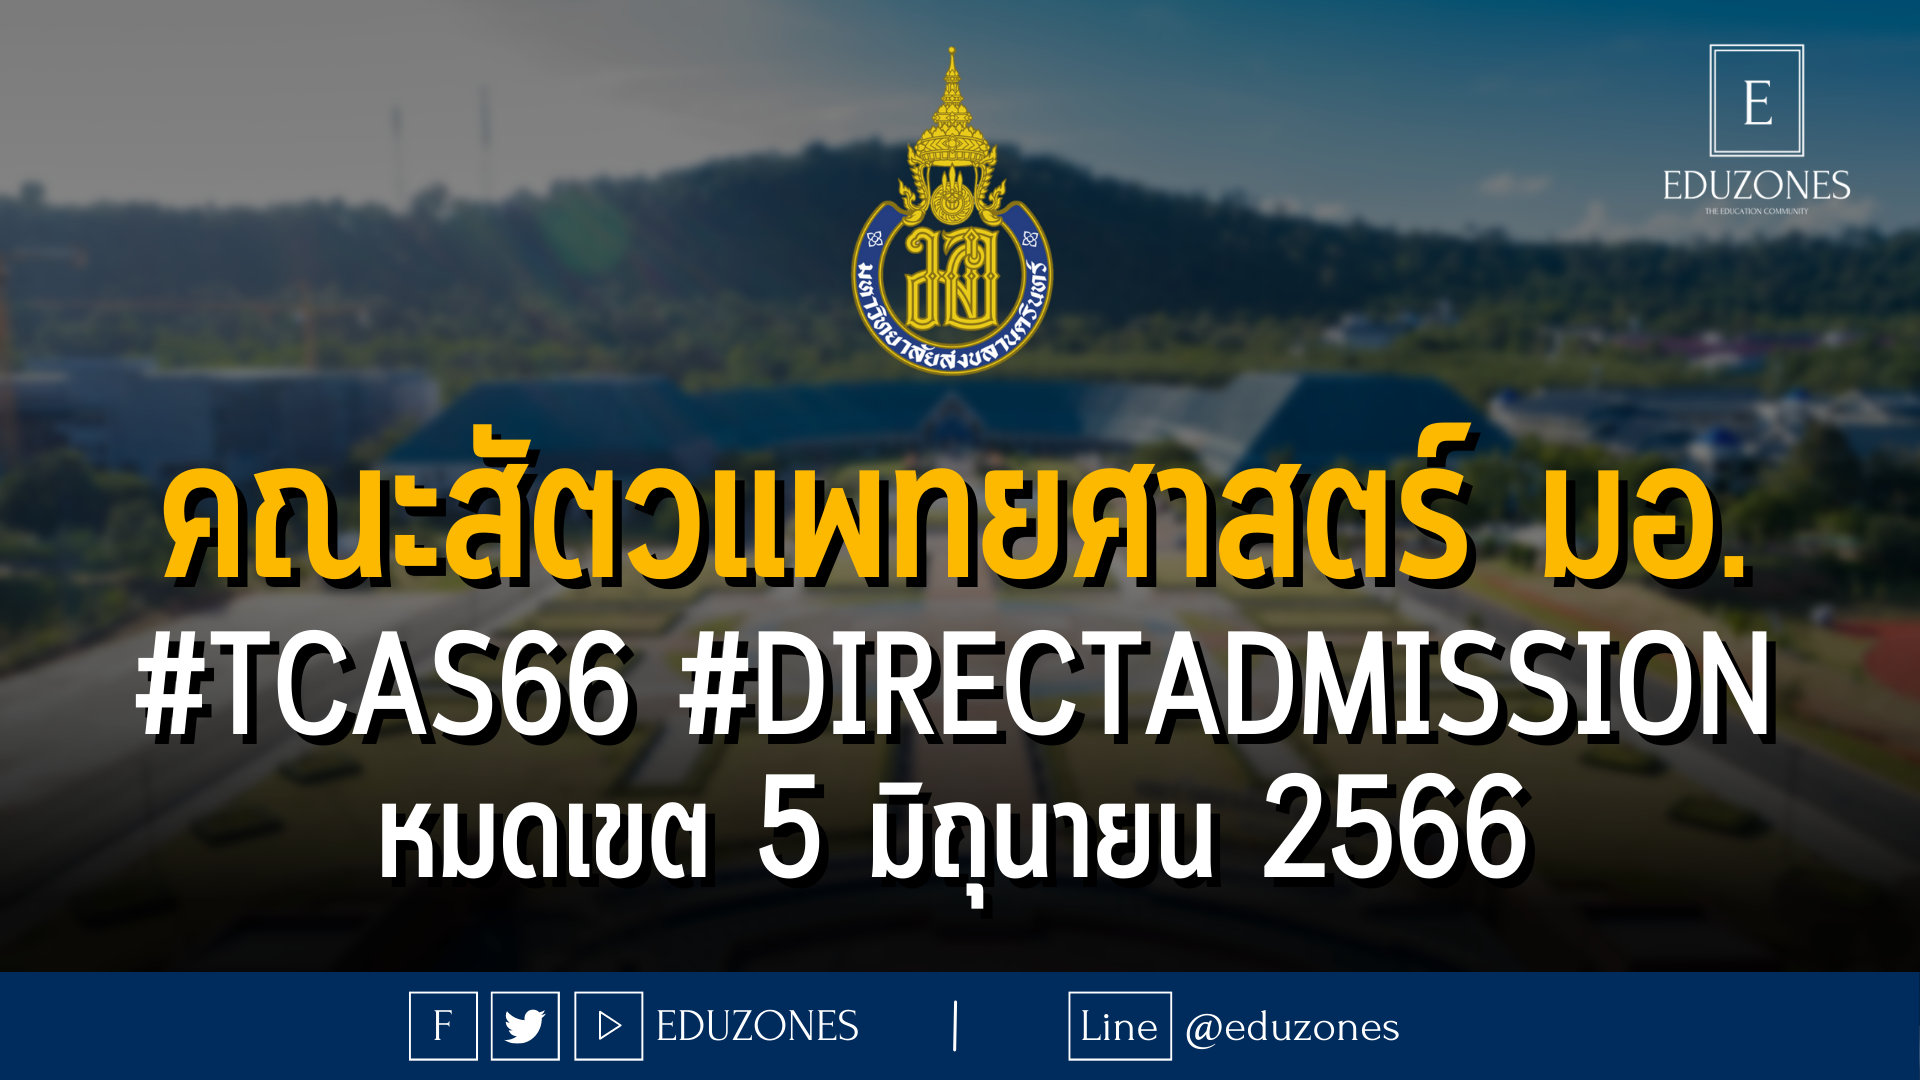 คณะสัตวแพทยศาสตร์ มหาวิทยาลัยสงขลานครินทร์ เปิดรับผ่าน #TCAS66 รอบ 4 #DIRECTADMISSION : หมดเขต 5 มิถุนายน 2566